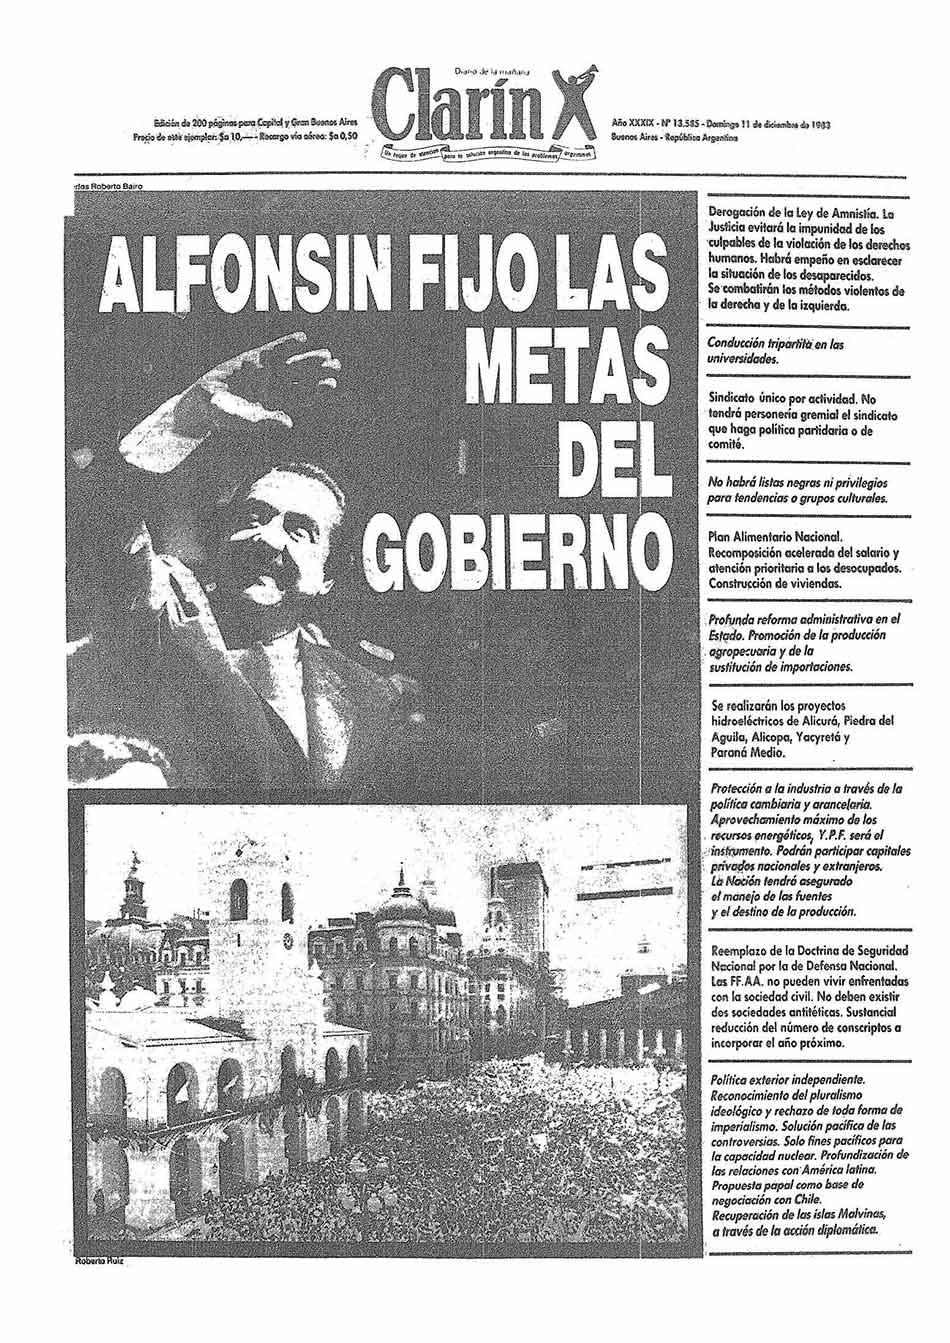 Imagen Titular del diario Clarín. Asunción de Alfonsín.